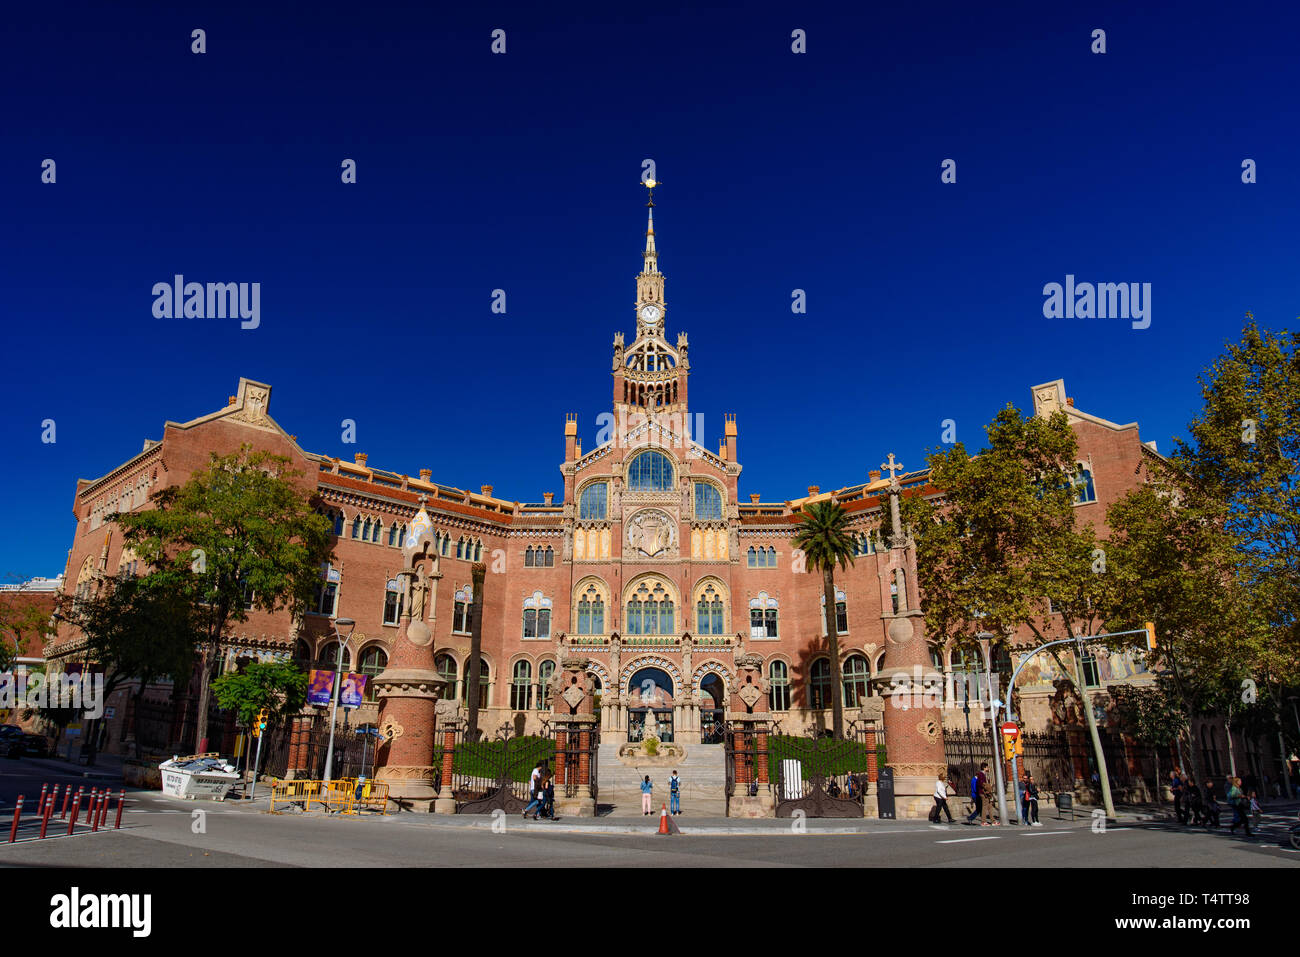 Hôpital de la Sainte Croix et Saint Paul (hôpital de la Santa Creu i Sant Pau) par Domènech, Site du patrimoine mondial de l'UNESCO à Barcelone, Espagne Banque D'Images